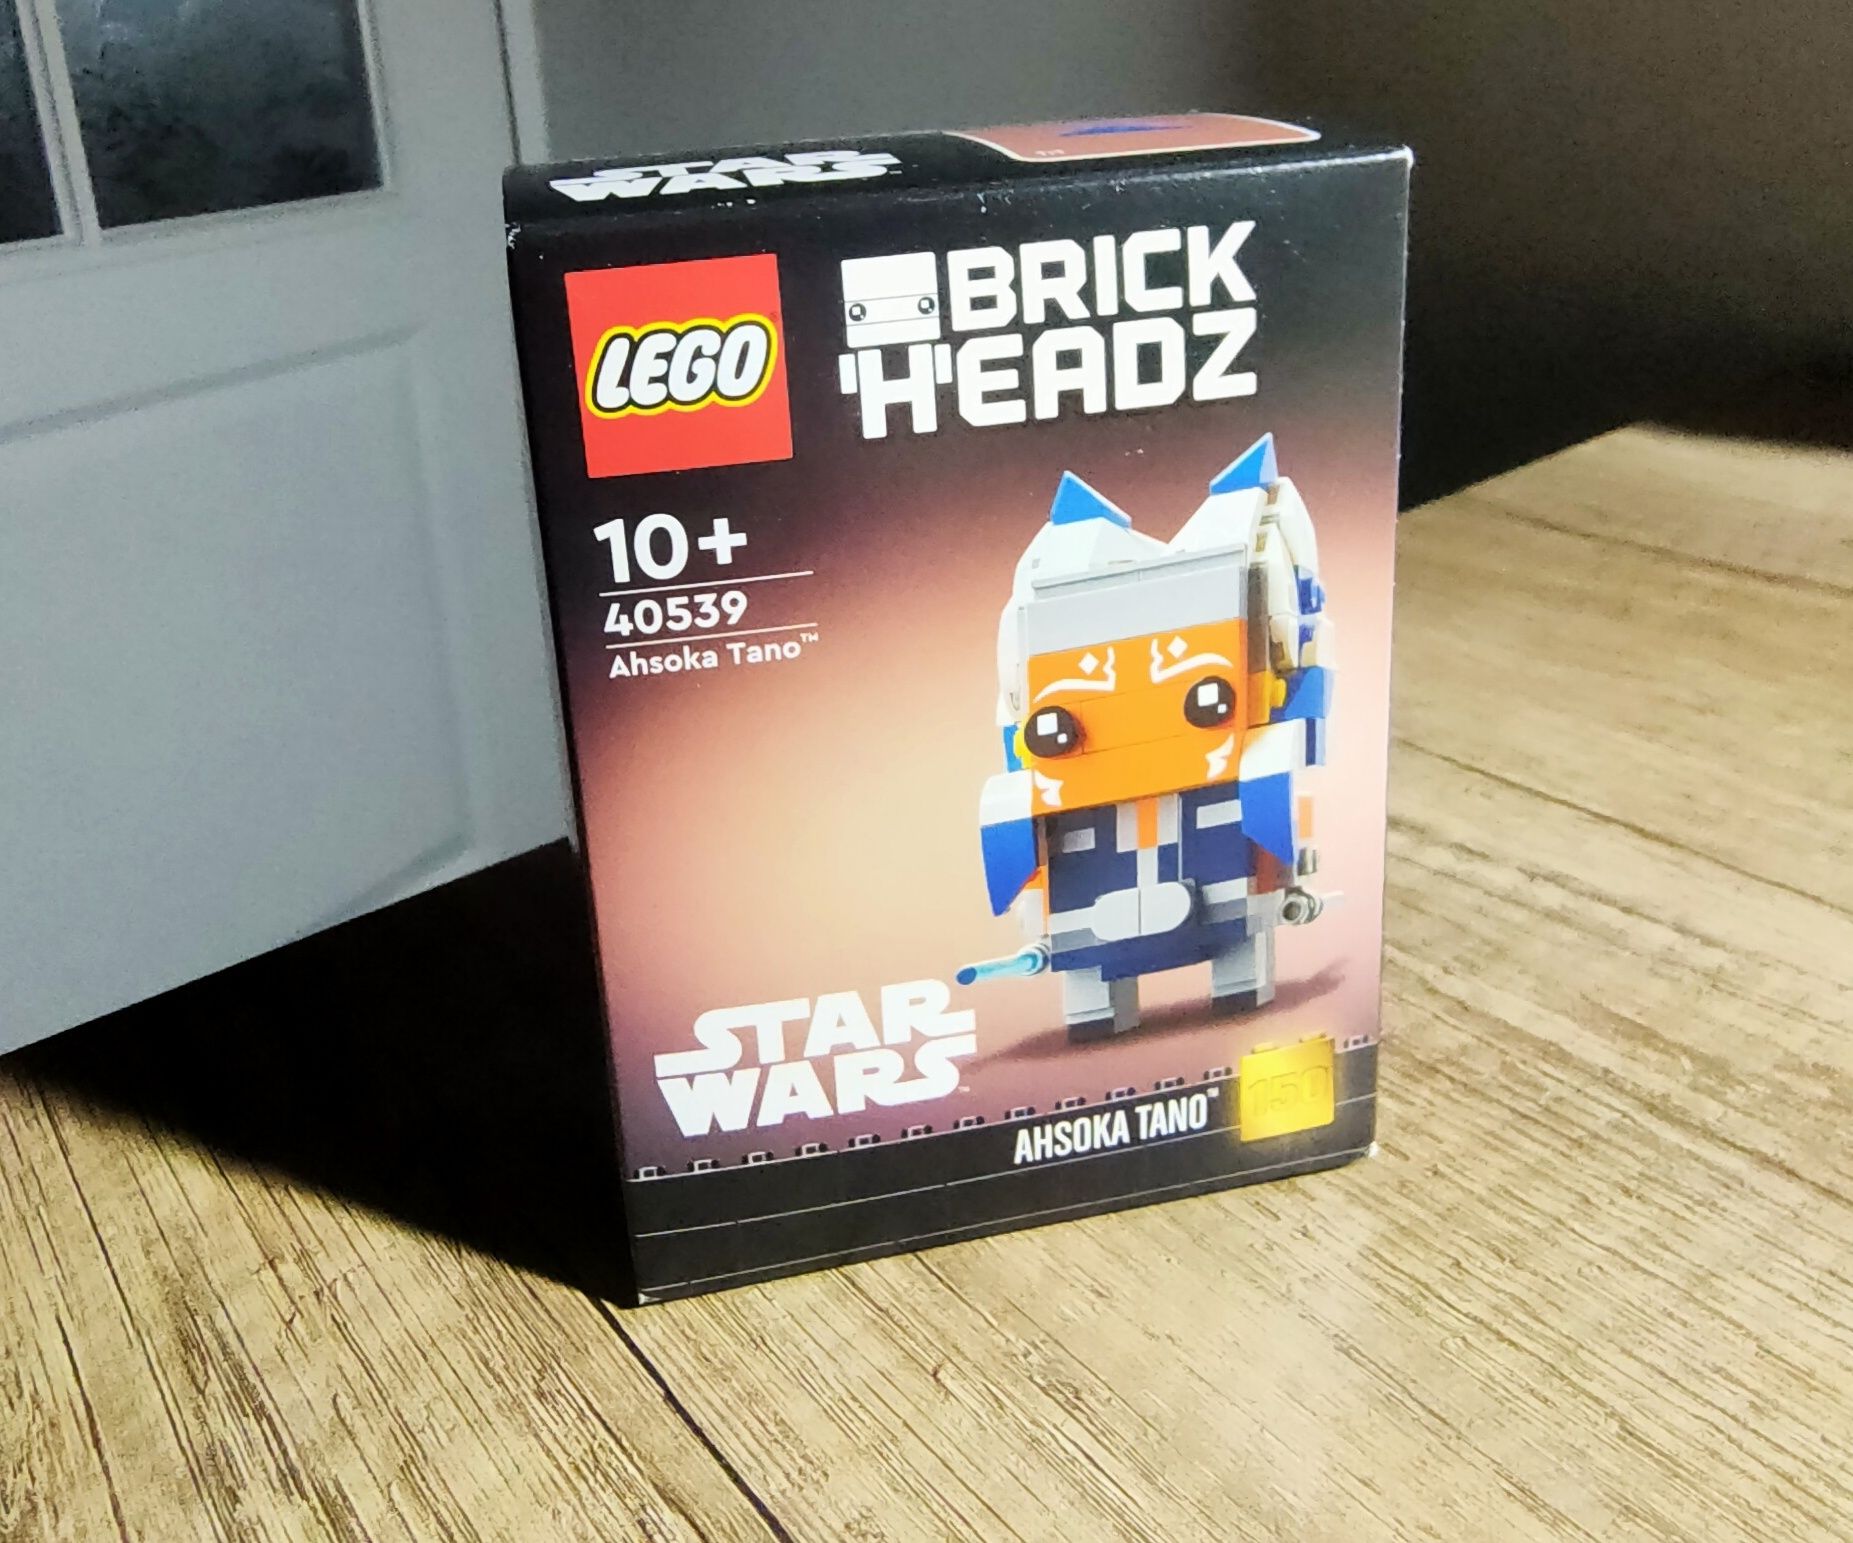 LEGO star wars 40539 ahsoka tano brickheadz